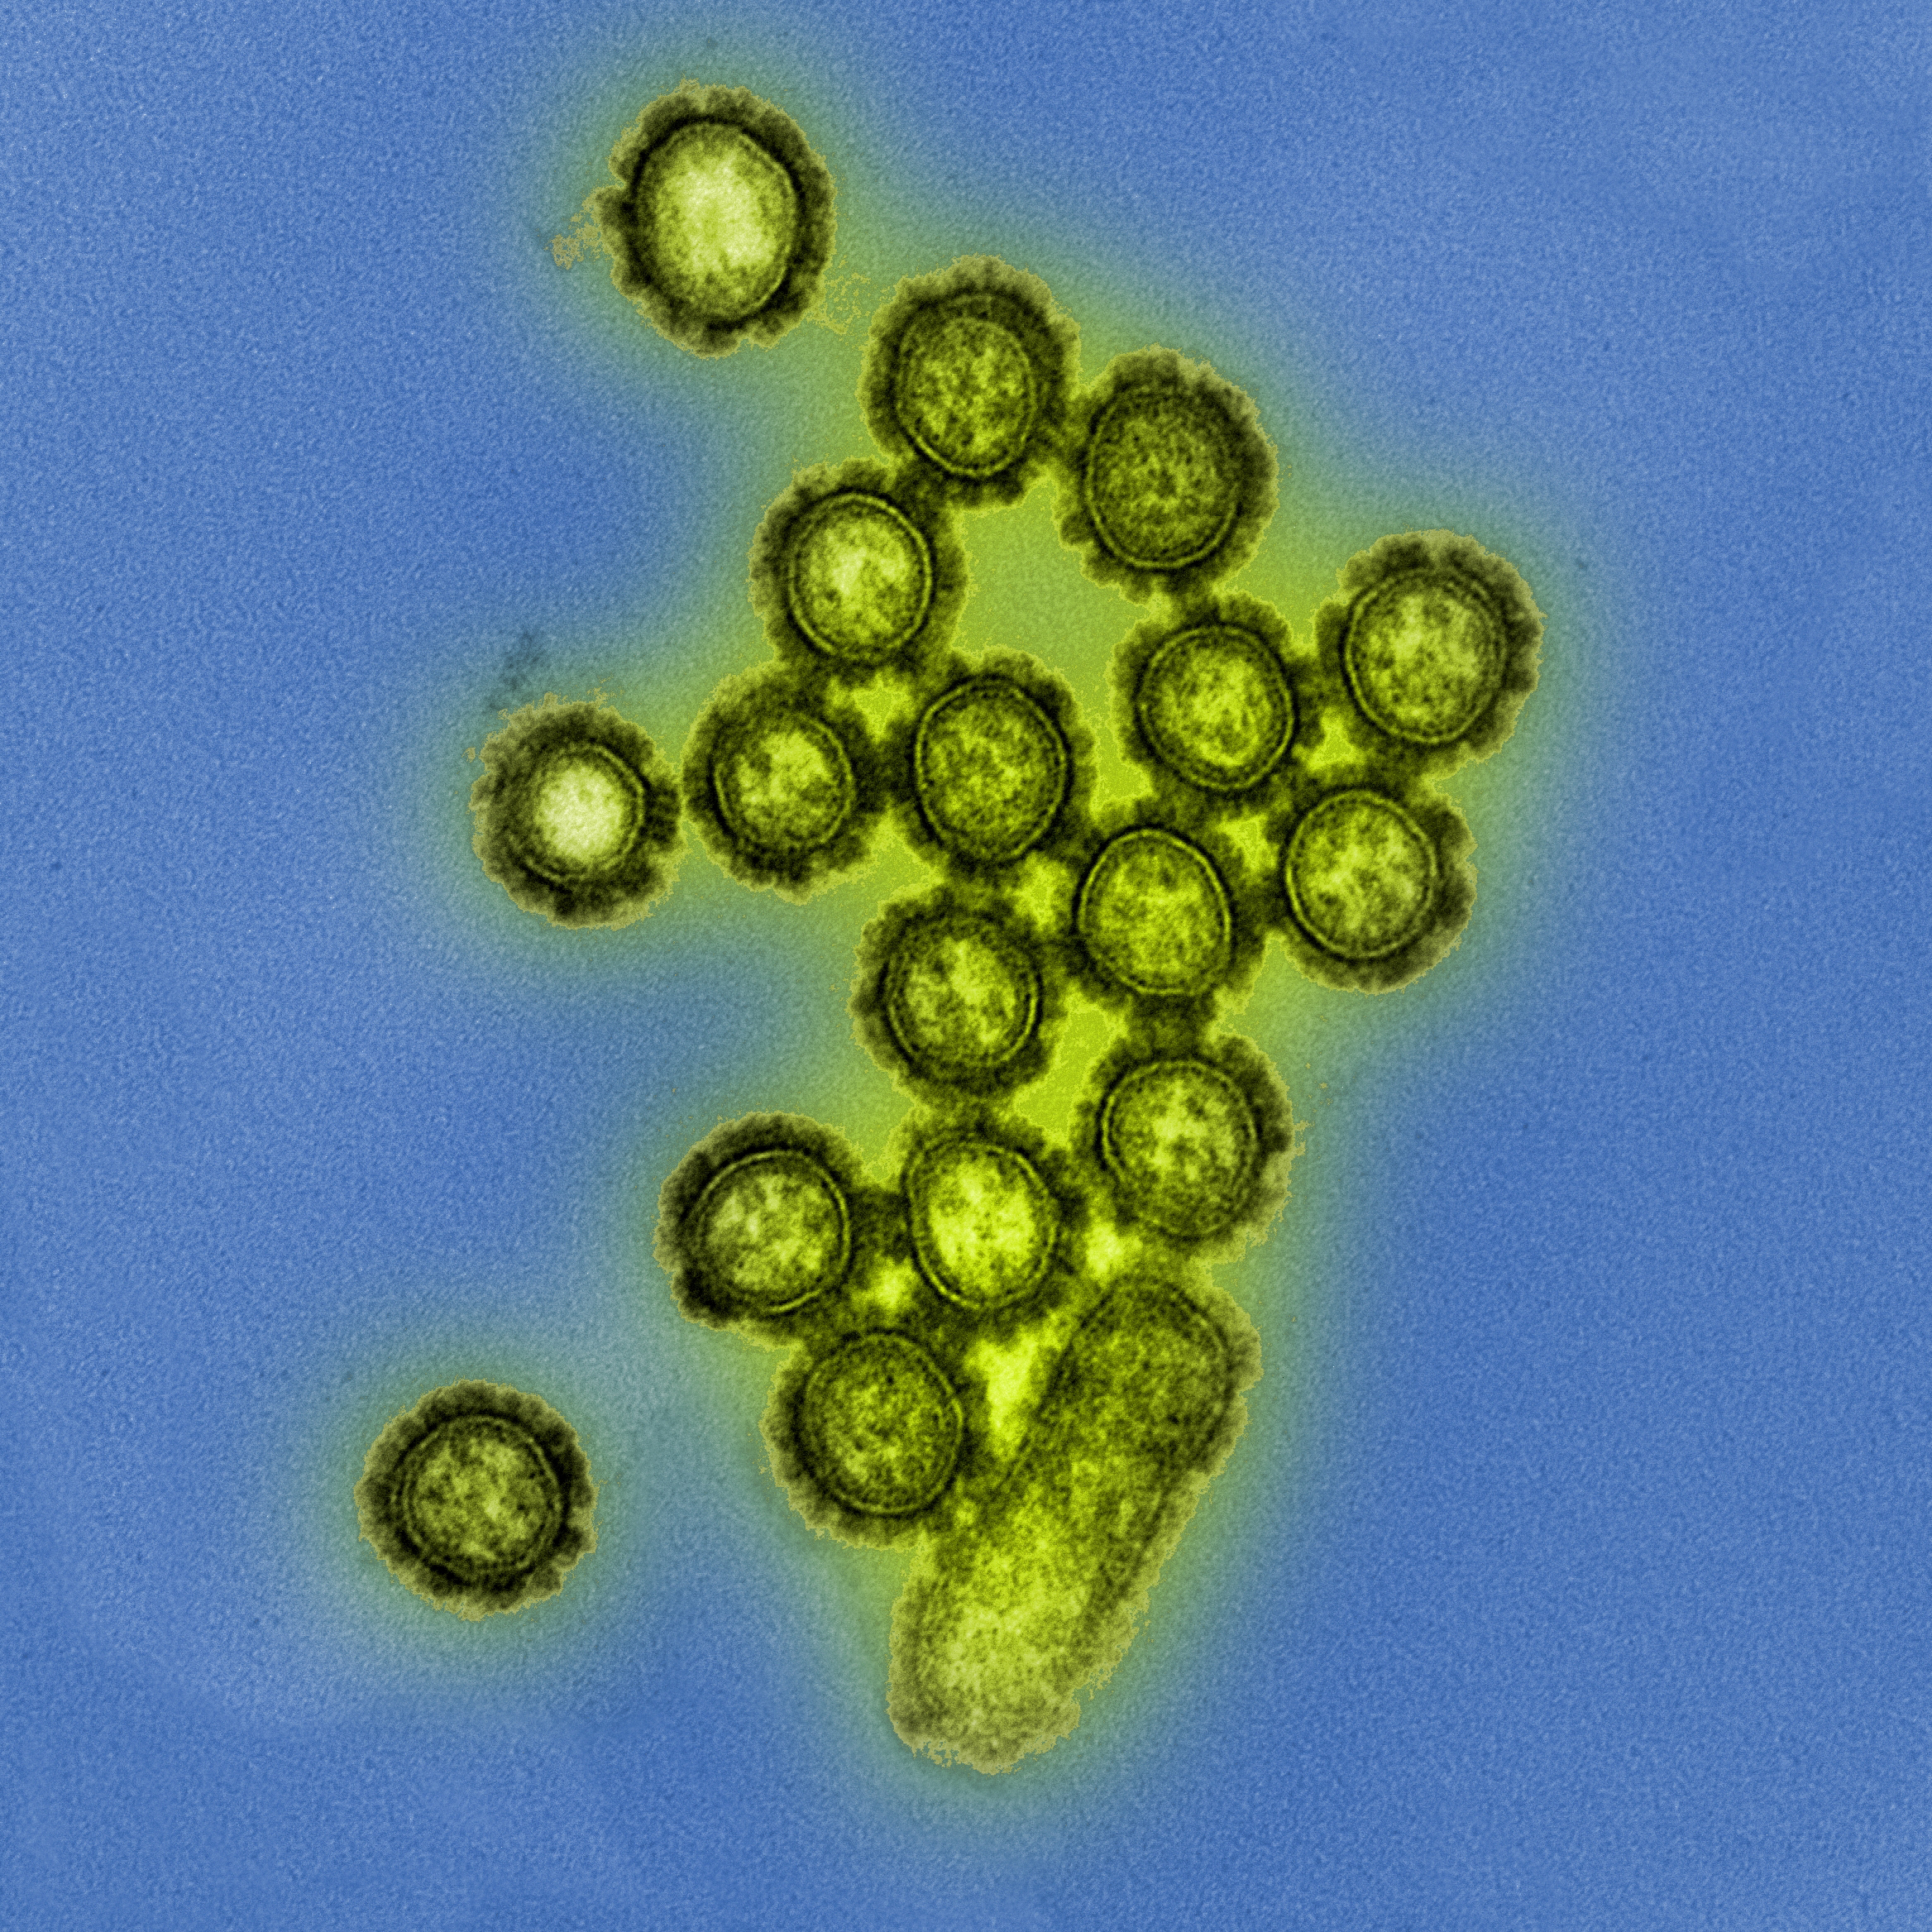 Viruspartikel des Grippeerregers H1N1. © NIAID/CC-BY 2.0